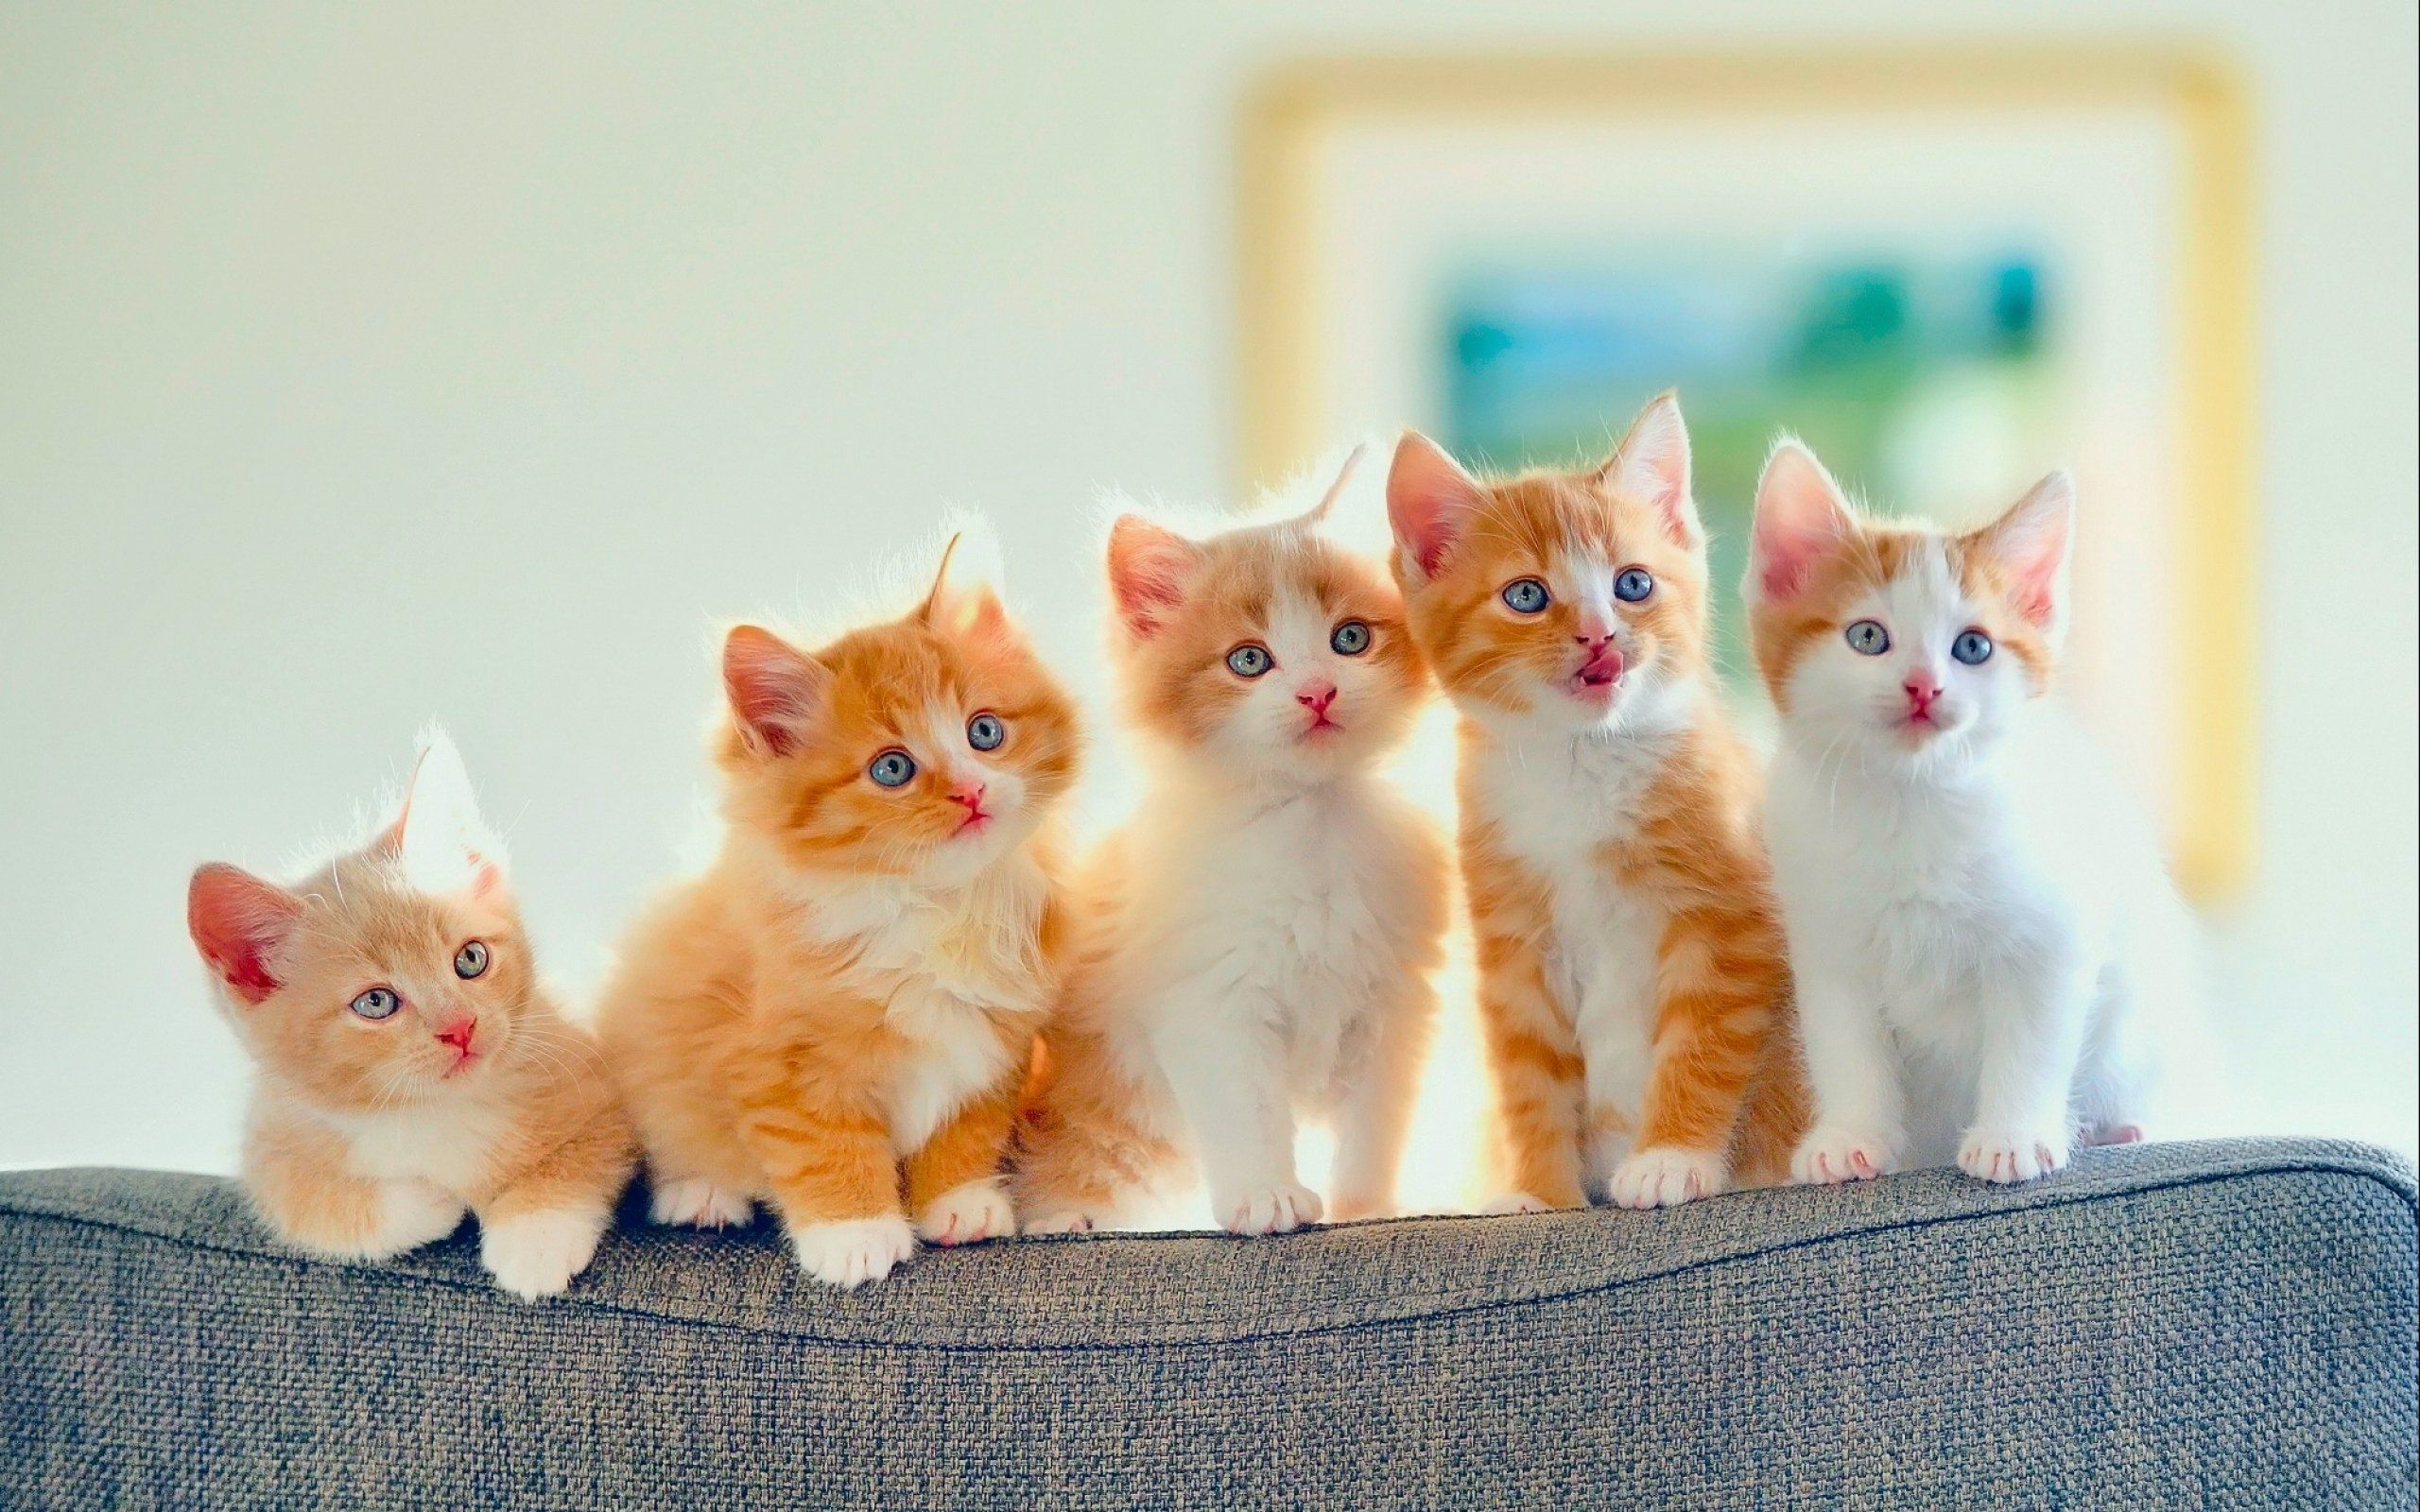 Kittens kitten cat cats baby cute s wallpaper | 2560x1600 | 708300 ...